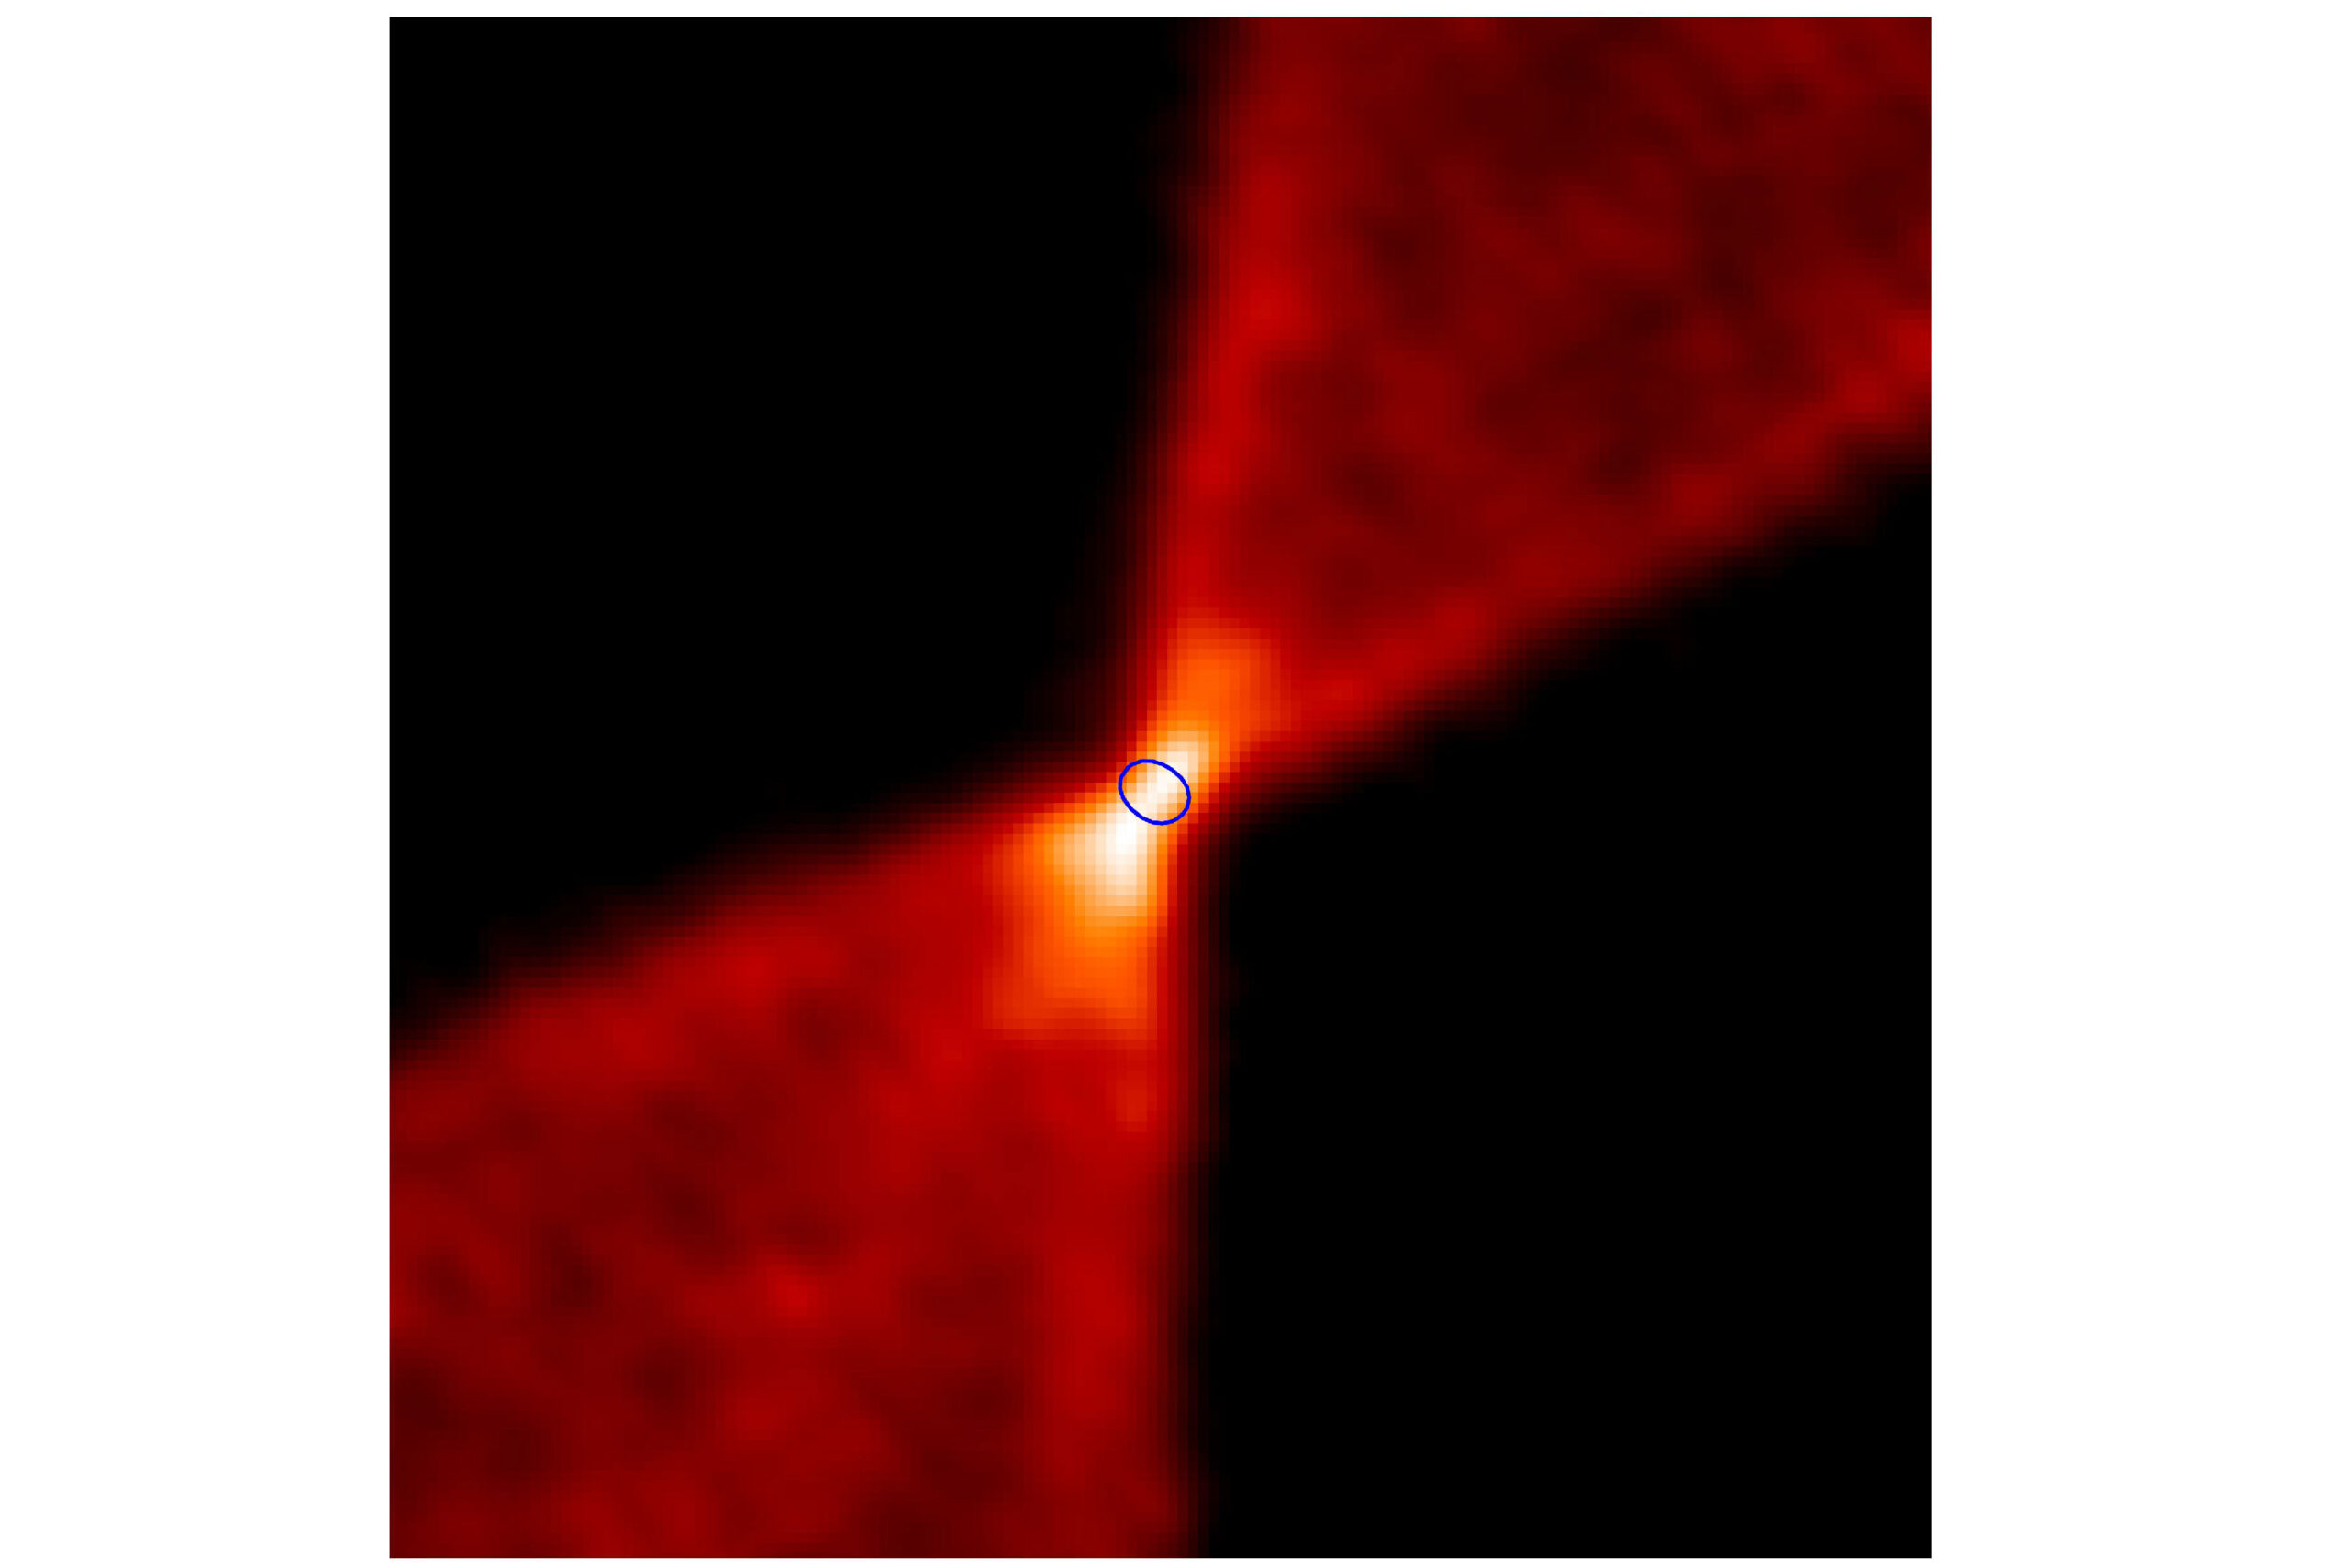 此圖由 ALMA 望遠鏡拍攝，呈現獵戶座大星雲中一個恆星形成區的一氧化碳分布，可見到明顯的分子外流（outflow）構造。富含複雜有機分子的「熱微核」位於藍色圓圈區域。圖│呂聖元